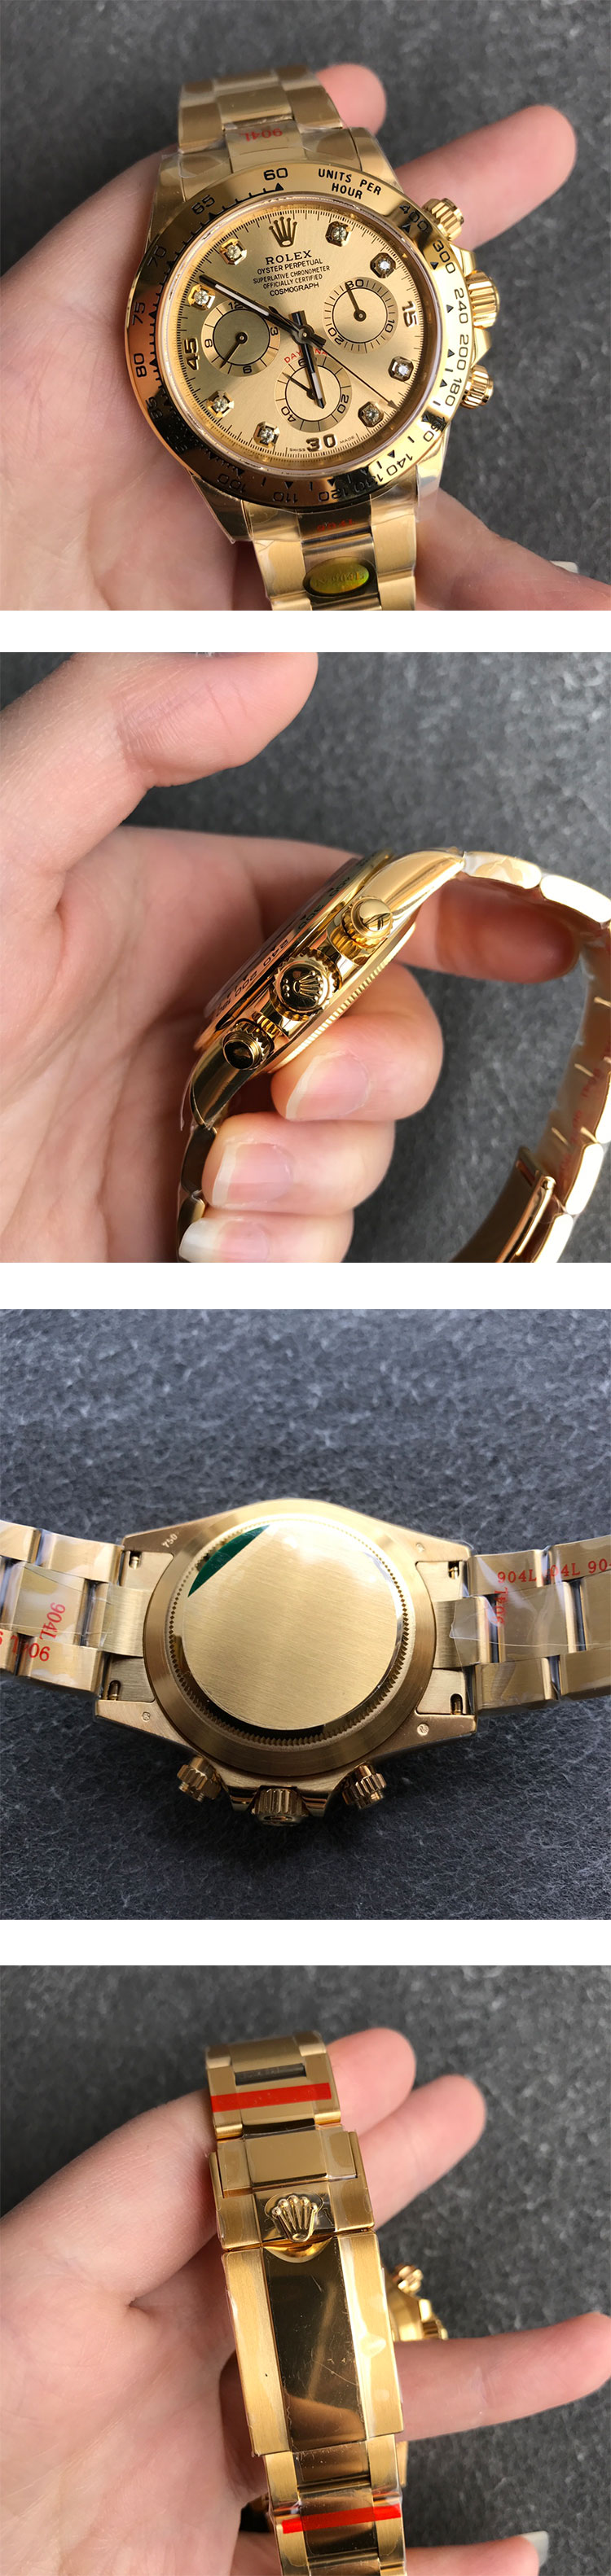 ロレックスM116508-0006 コスモグラフ デイト40mm シャンパン 8Pダイヤ 芸能人愛用時計コピー